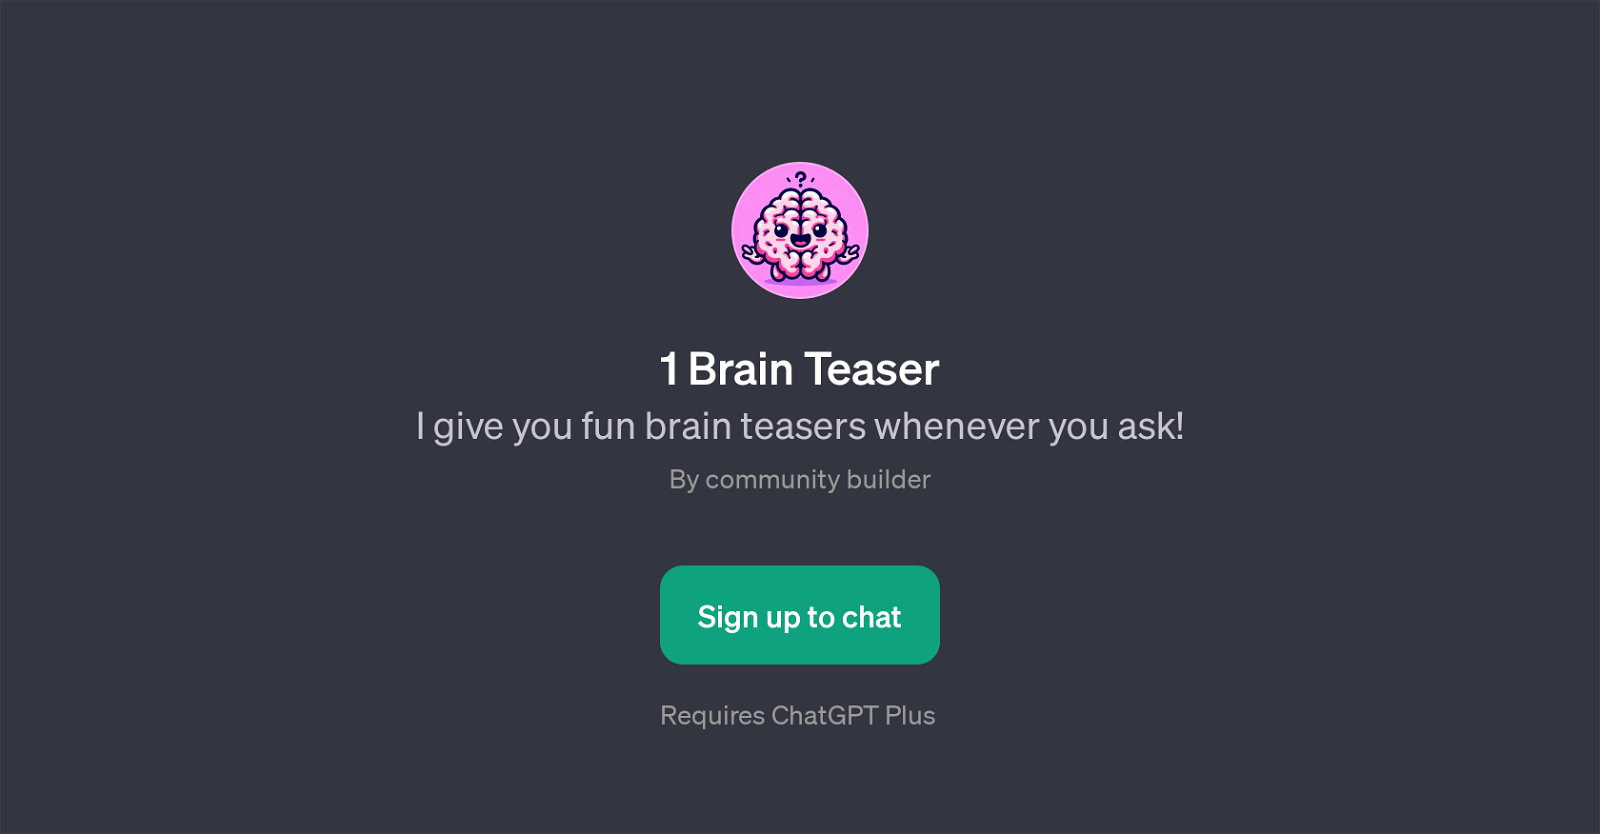 1 Brain Teaser website